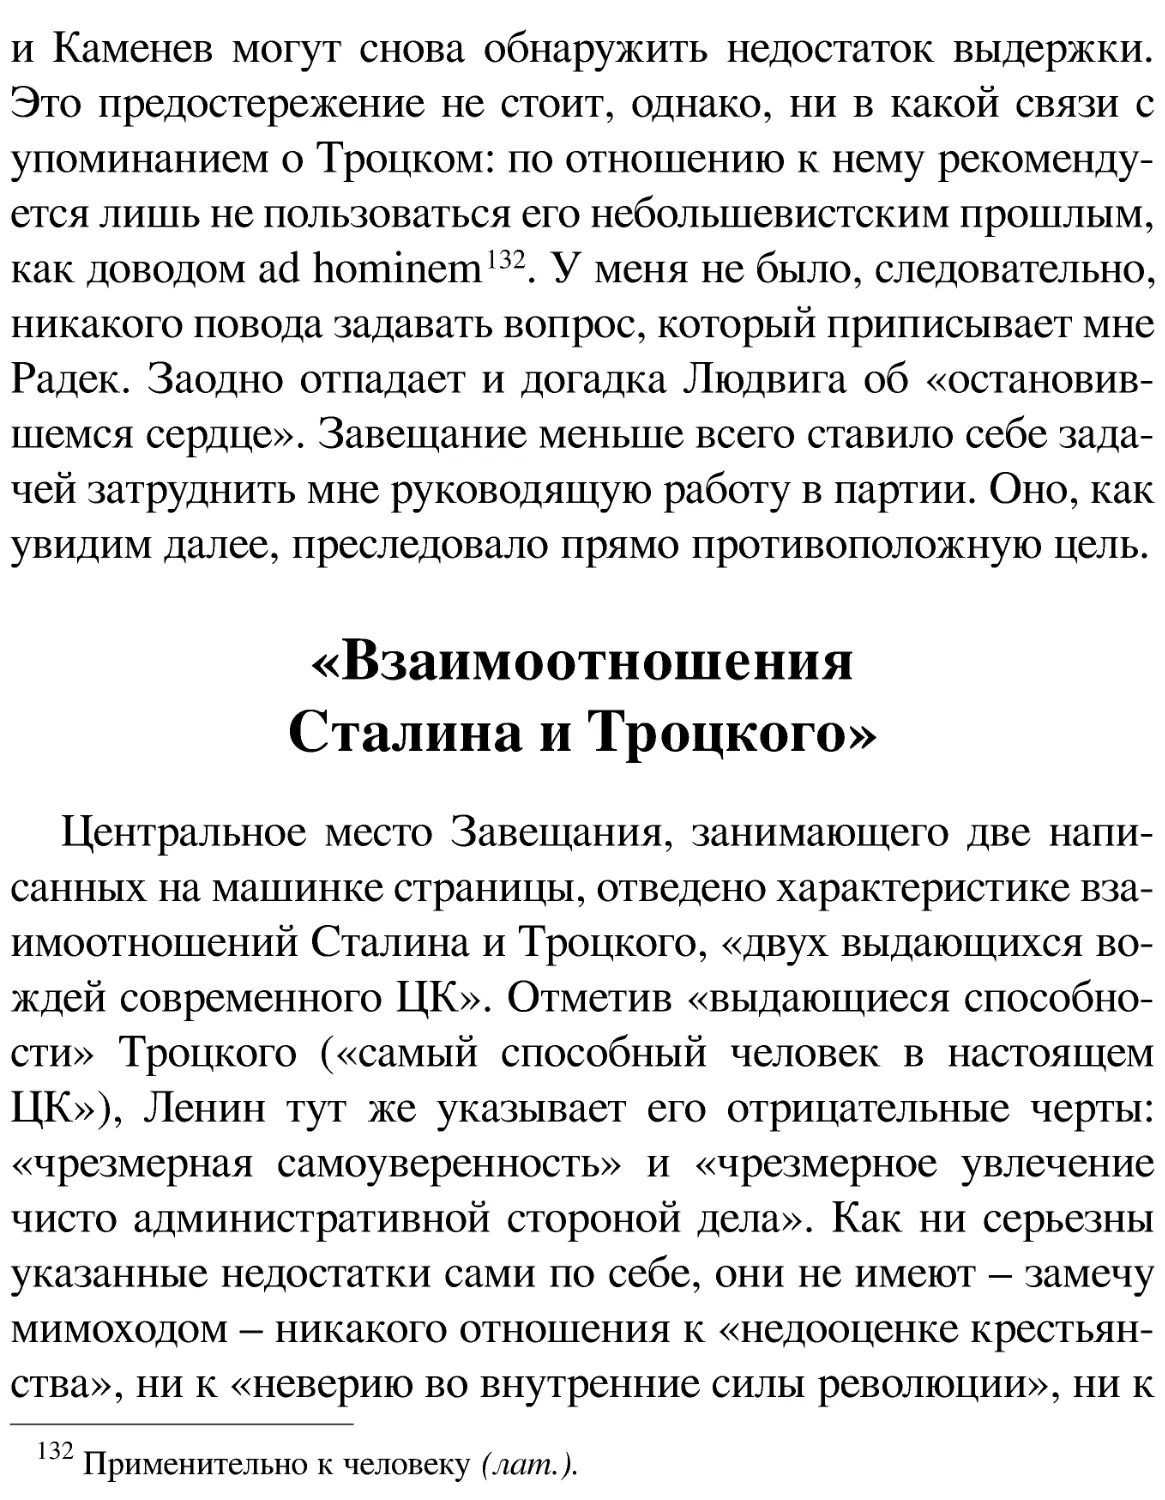 «Взаимоотношения Сталина и Троцкого»